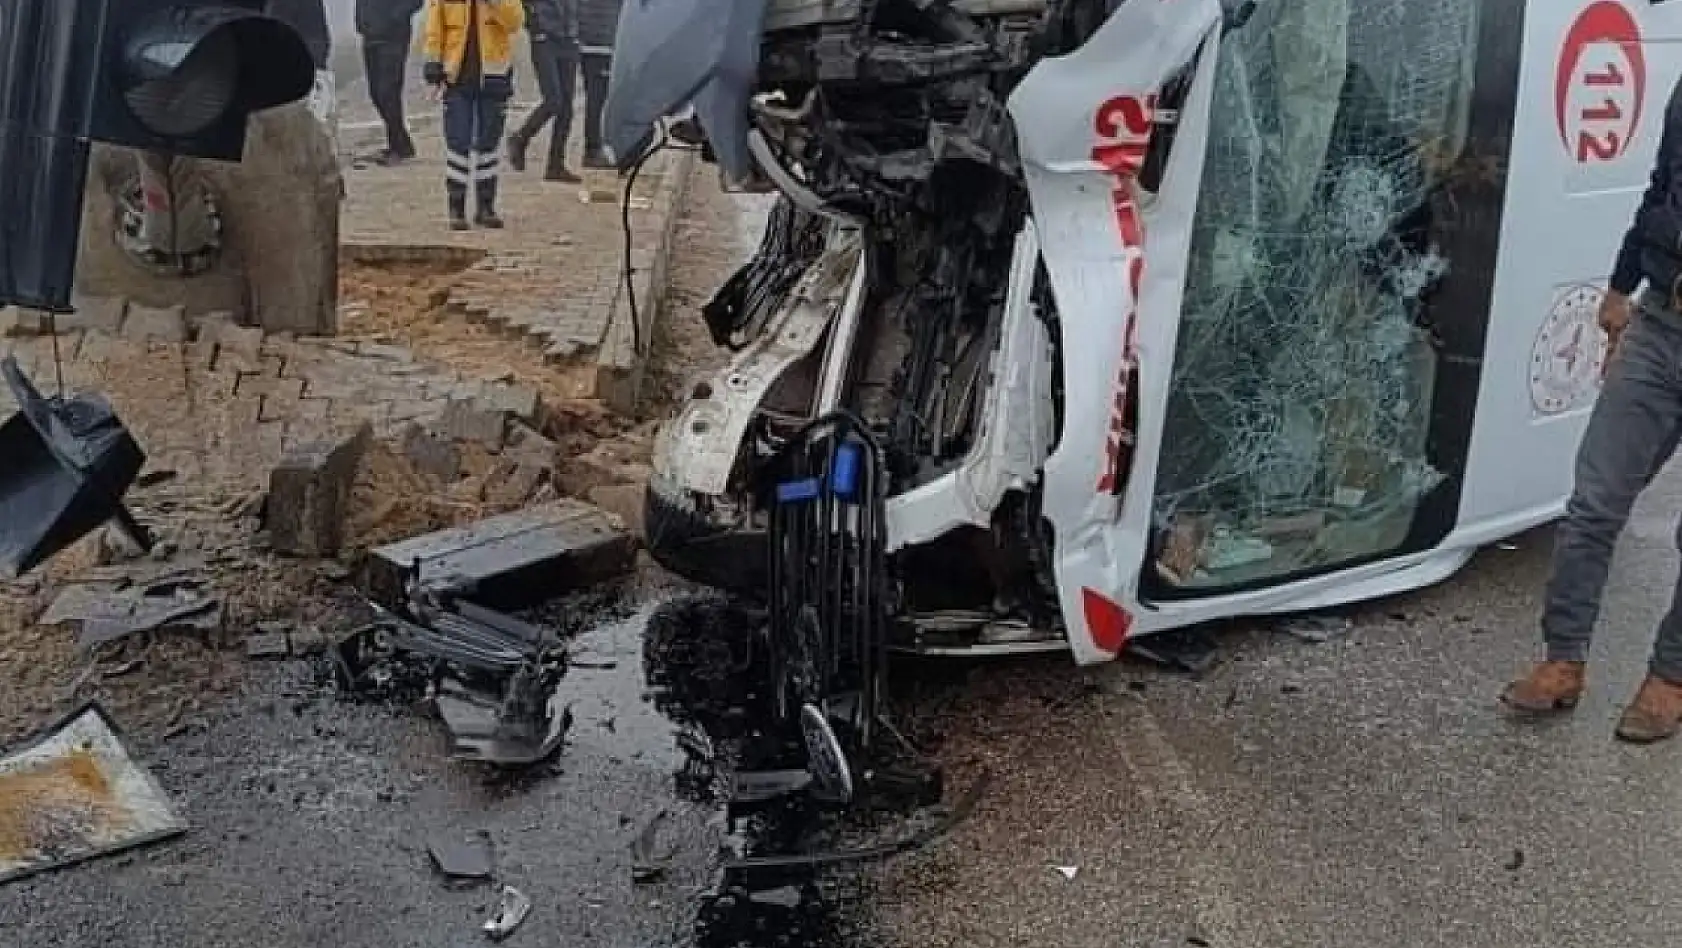 Elazığ'da ambulans sinyalizasyon direğine çarptı: 1 yaralı